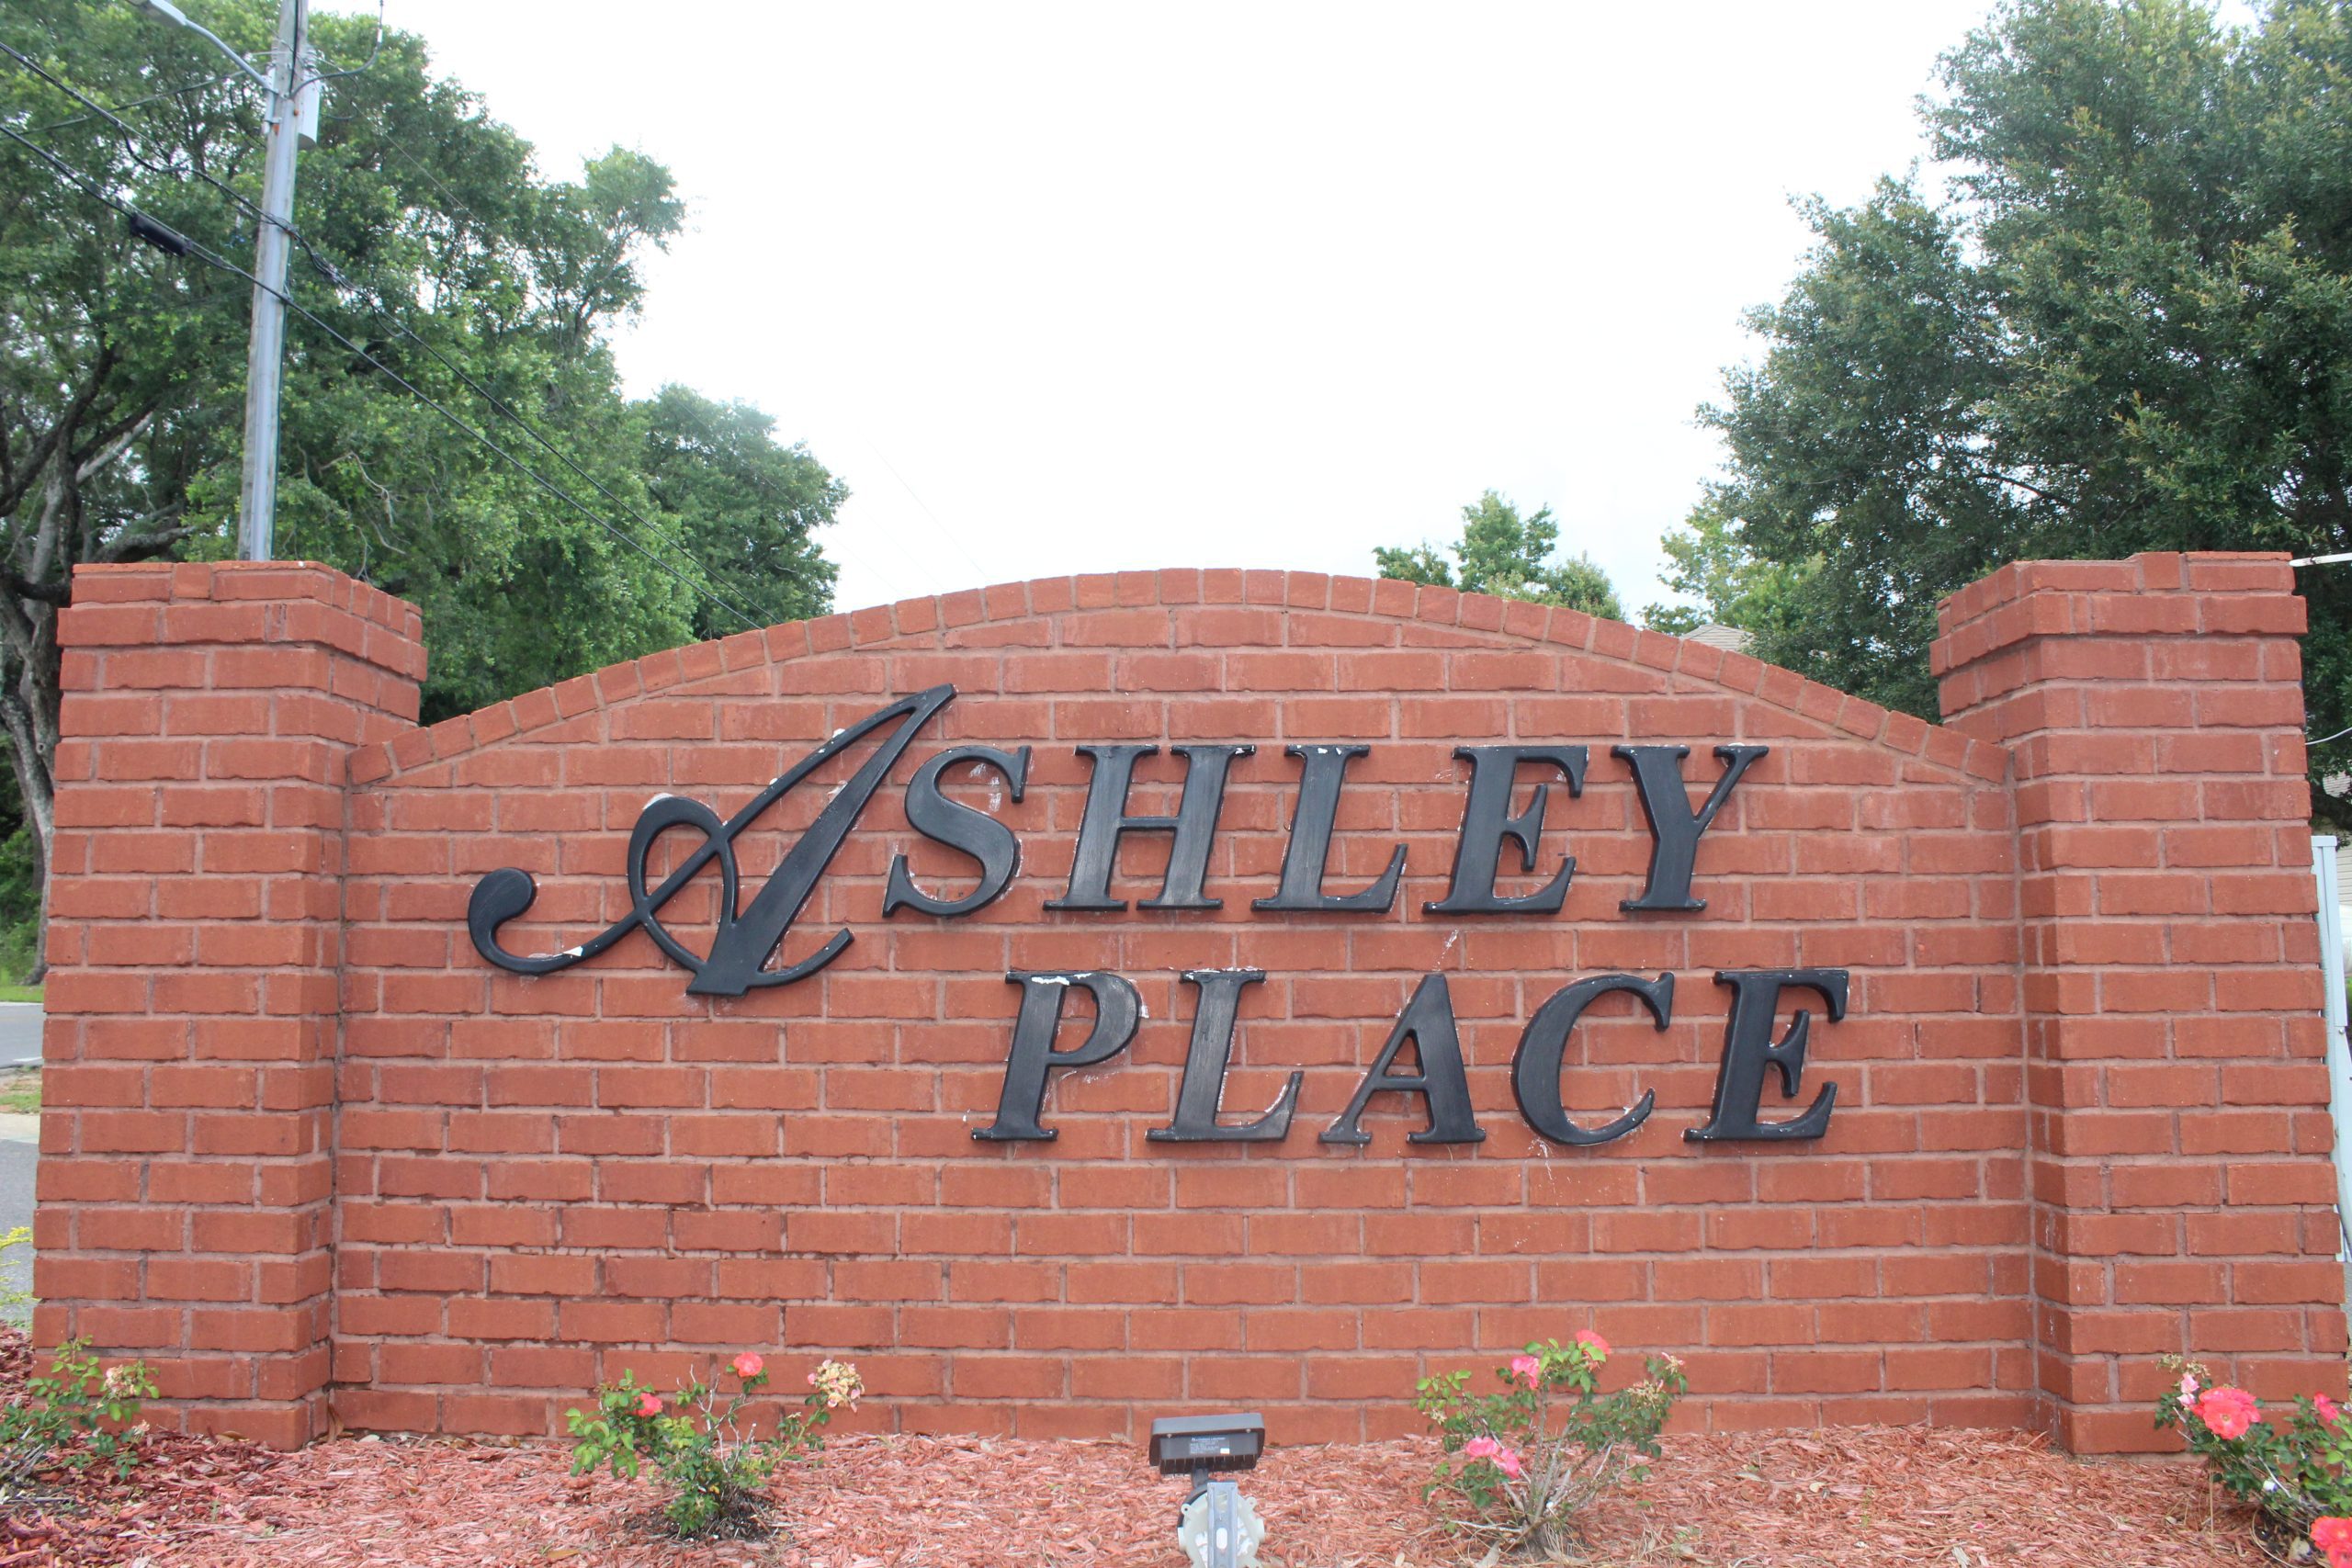 Ashley Place, Pace, FL